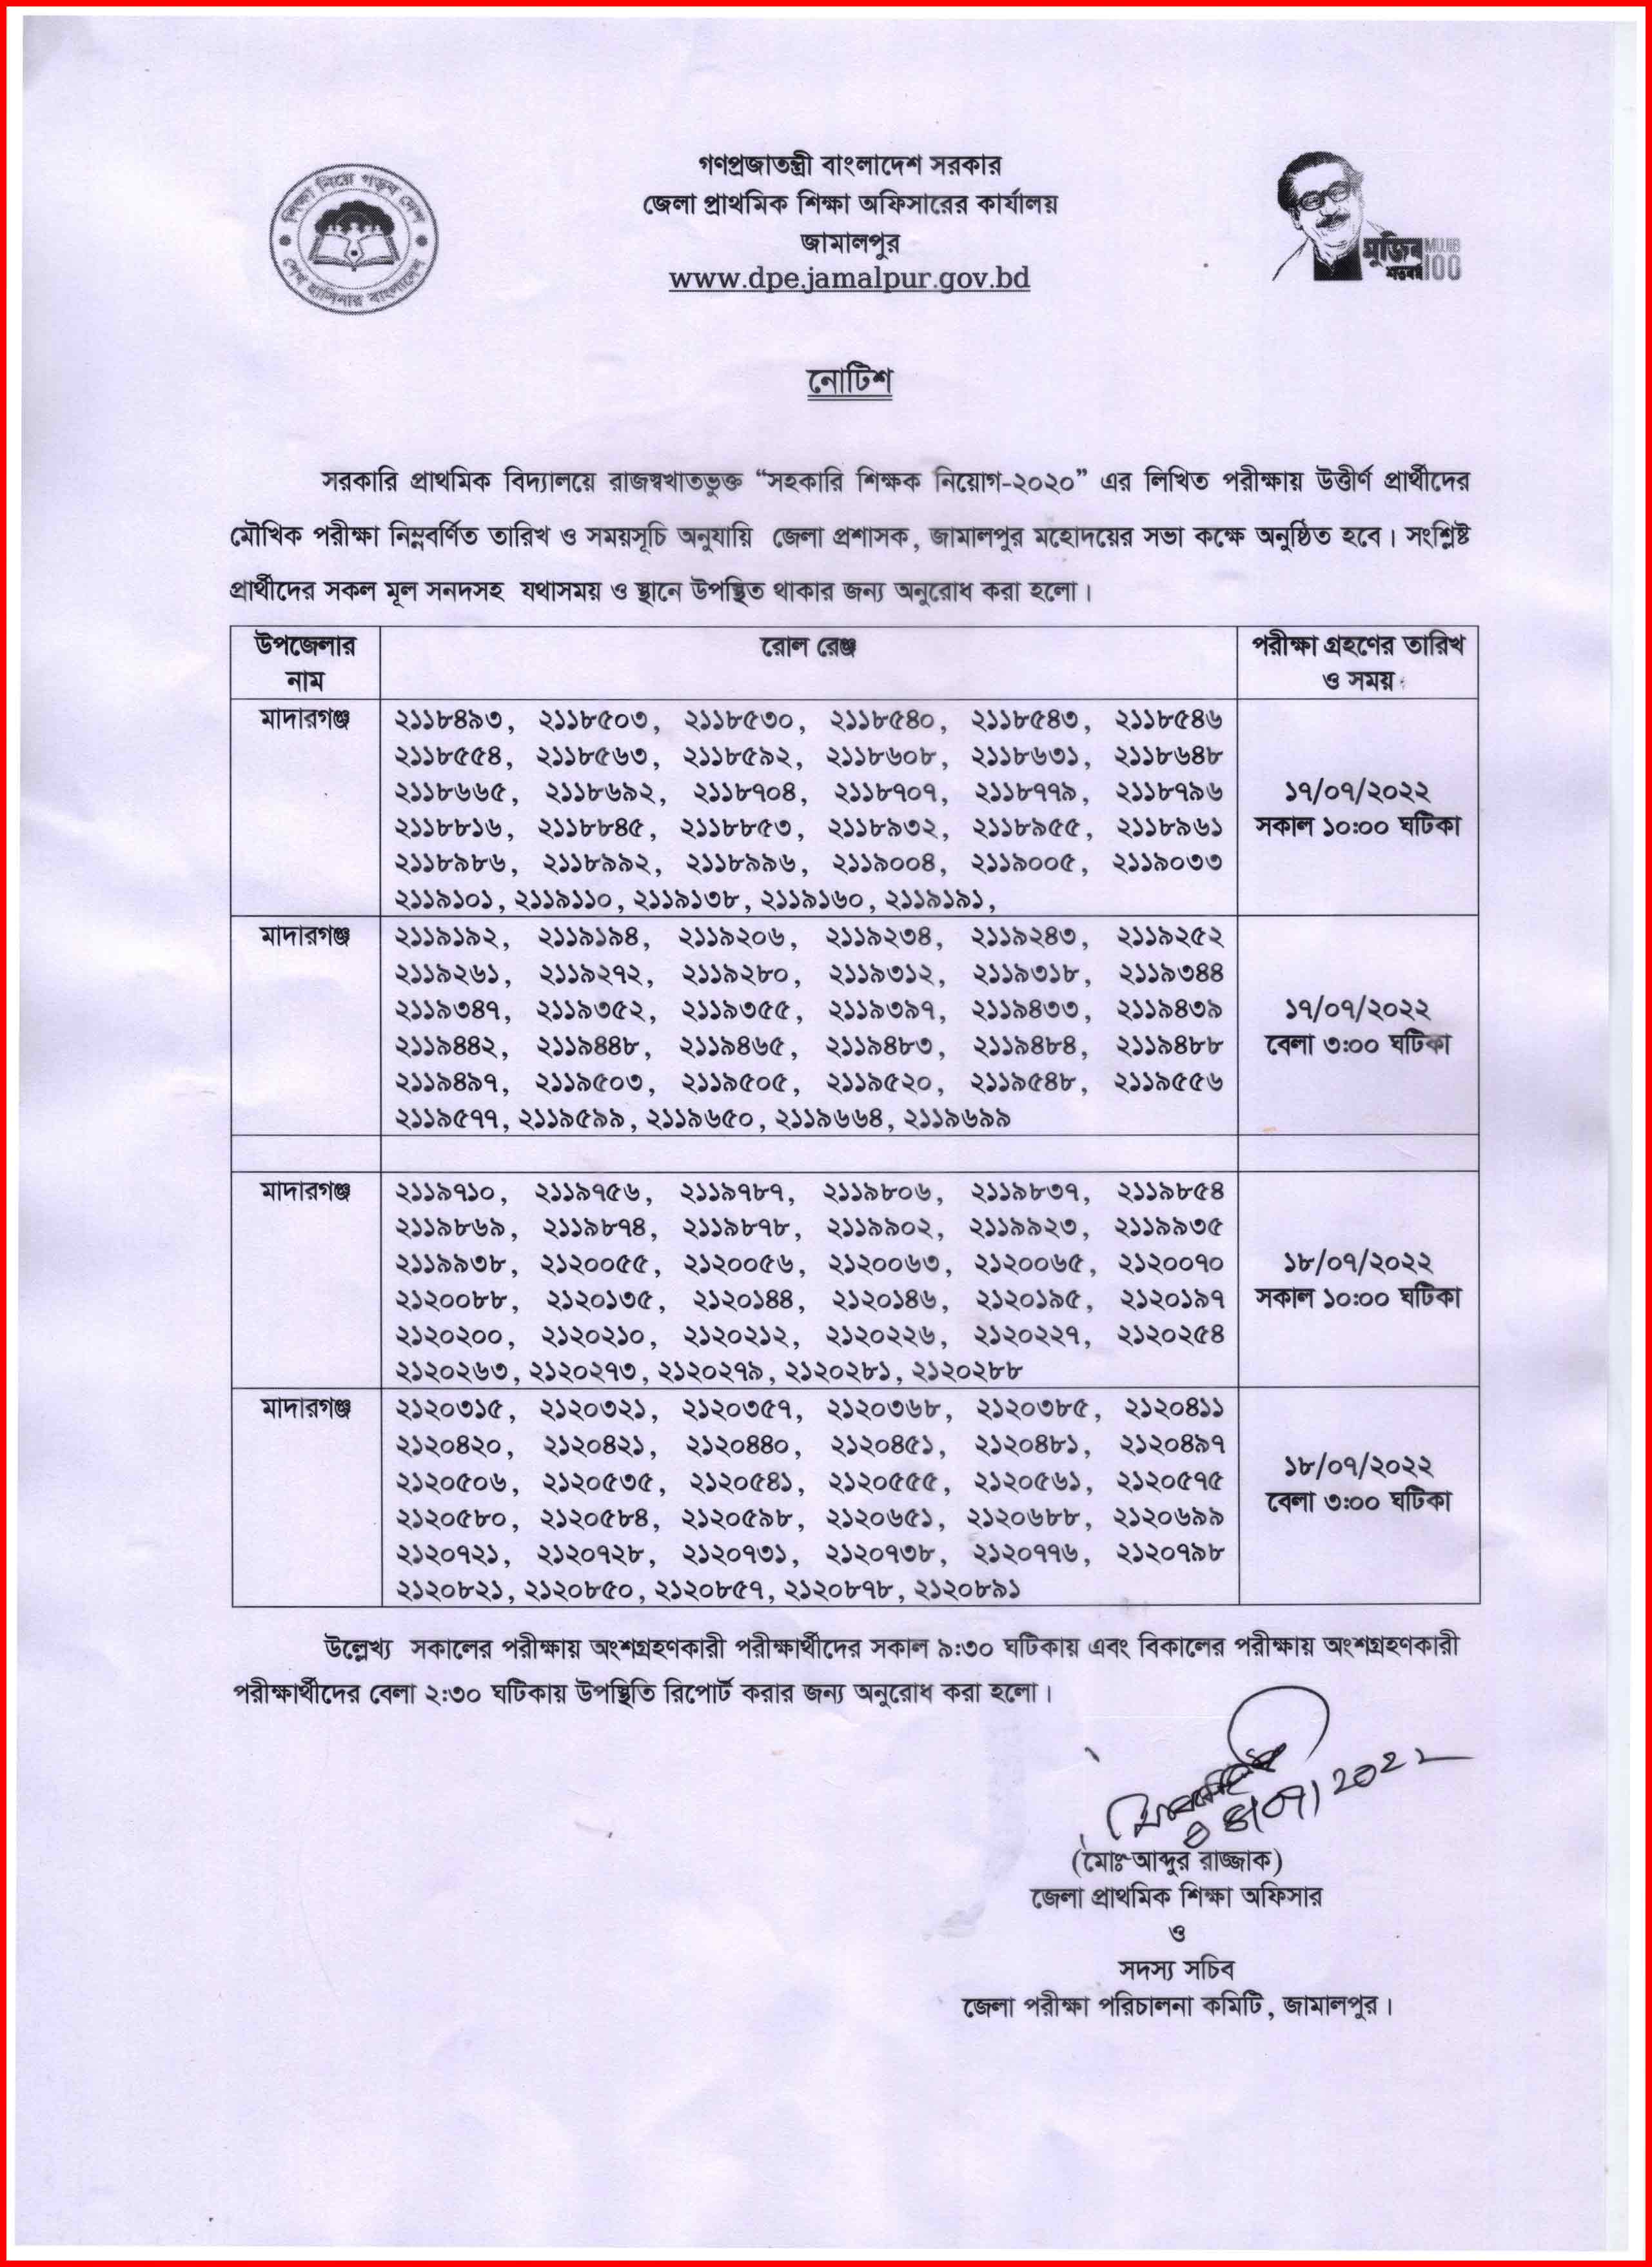 জামালপুর জেলার মাদারগঞ্জ উপজেলার প্রাথমিক সহকারী শিক্ষক নিয়োগের মৌখিক পরীক্ষার সময়সূচি ।  Schedule of oral examination for appointment of primary assistant teachers in Madarganj upazila of Jamalpur district.